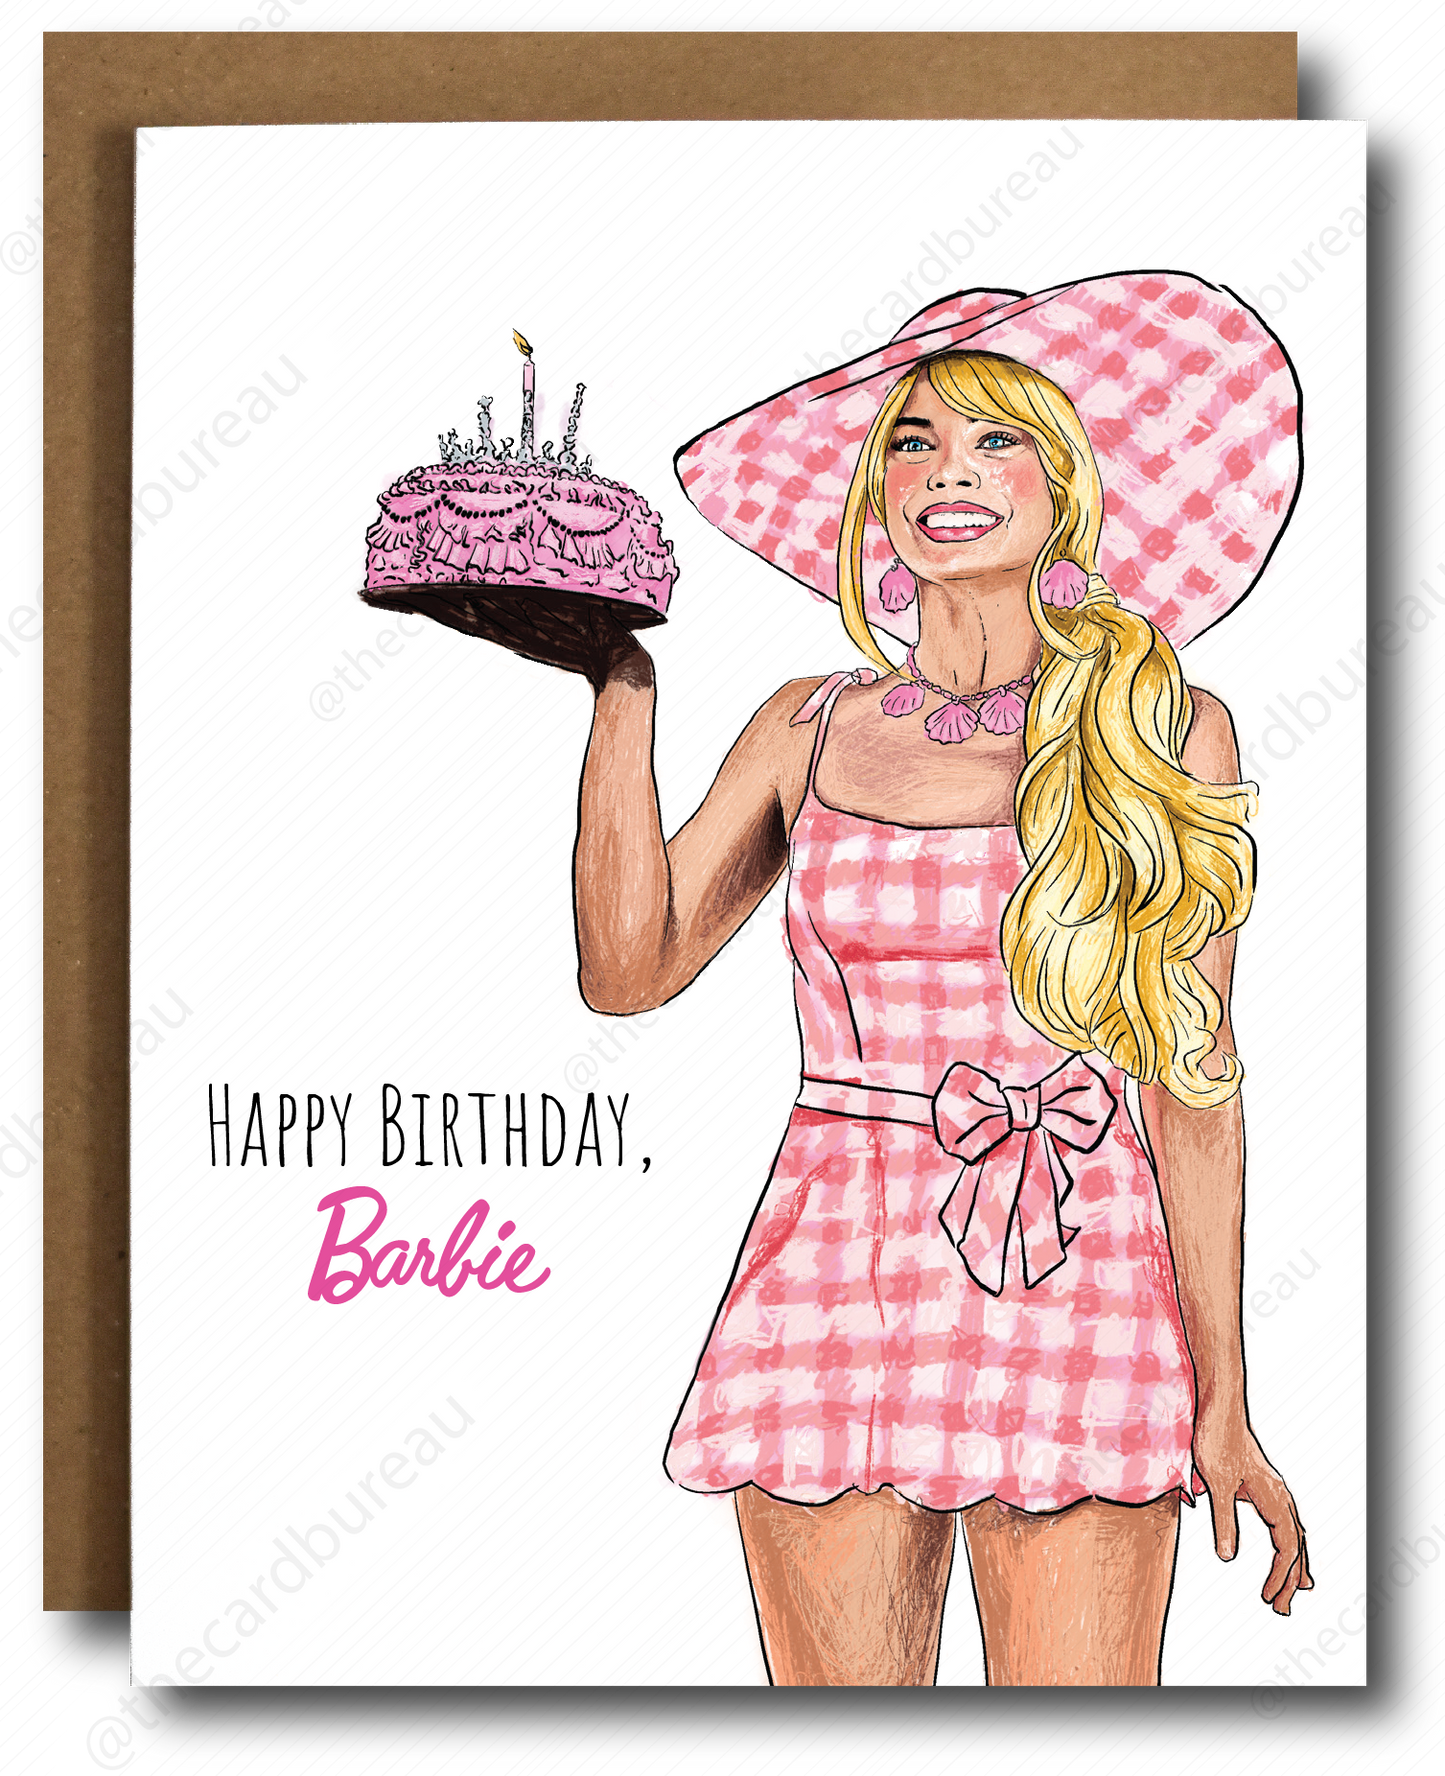 Barbie Birthday Card Home Goods The Card Bureau   